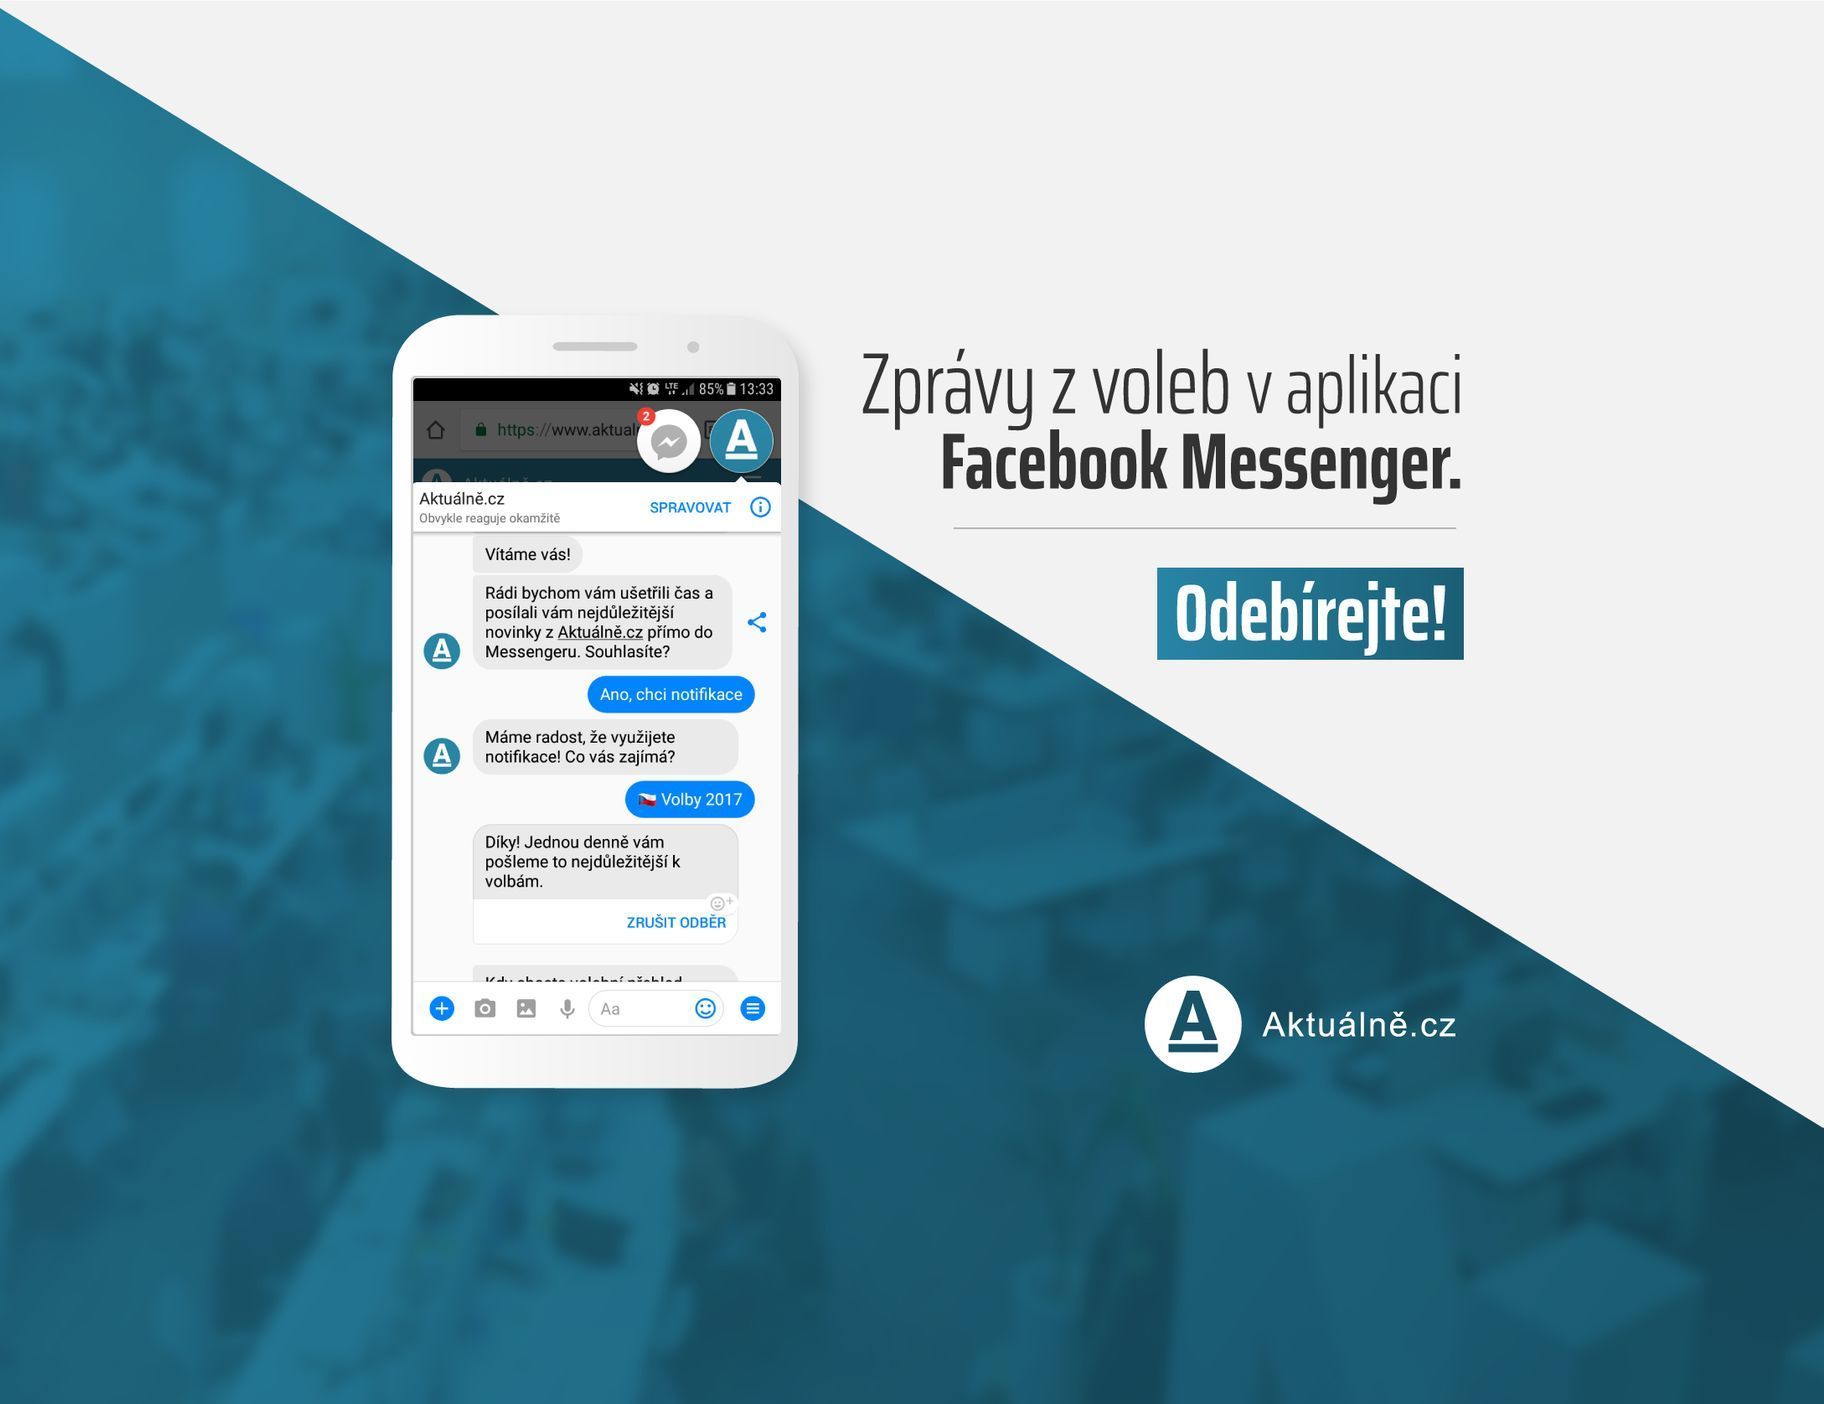 Aktuálně.cz - Facebook Messenger